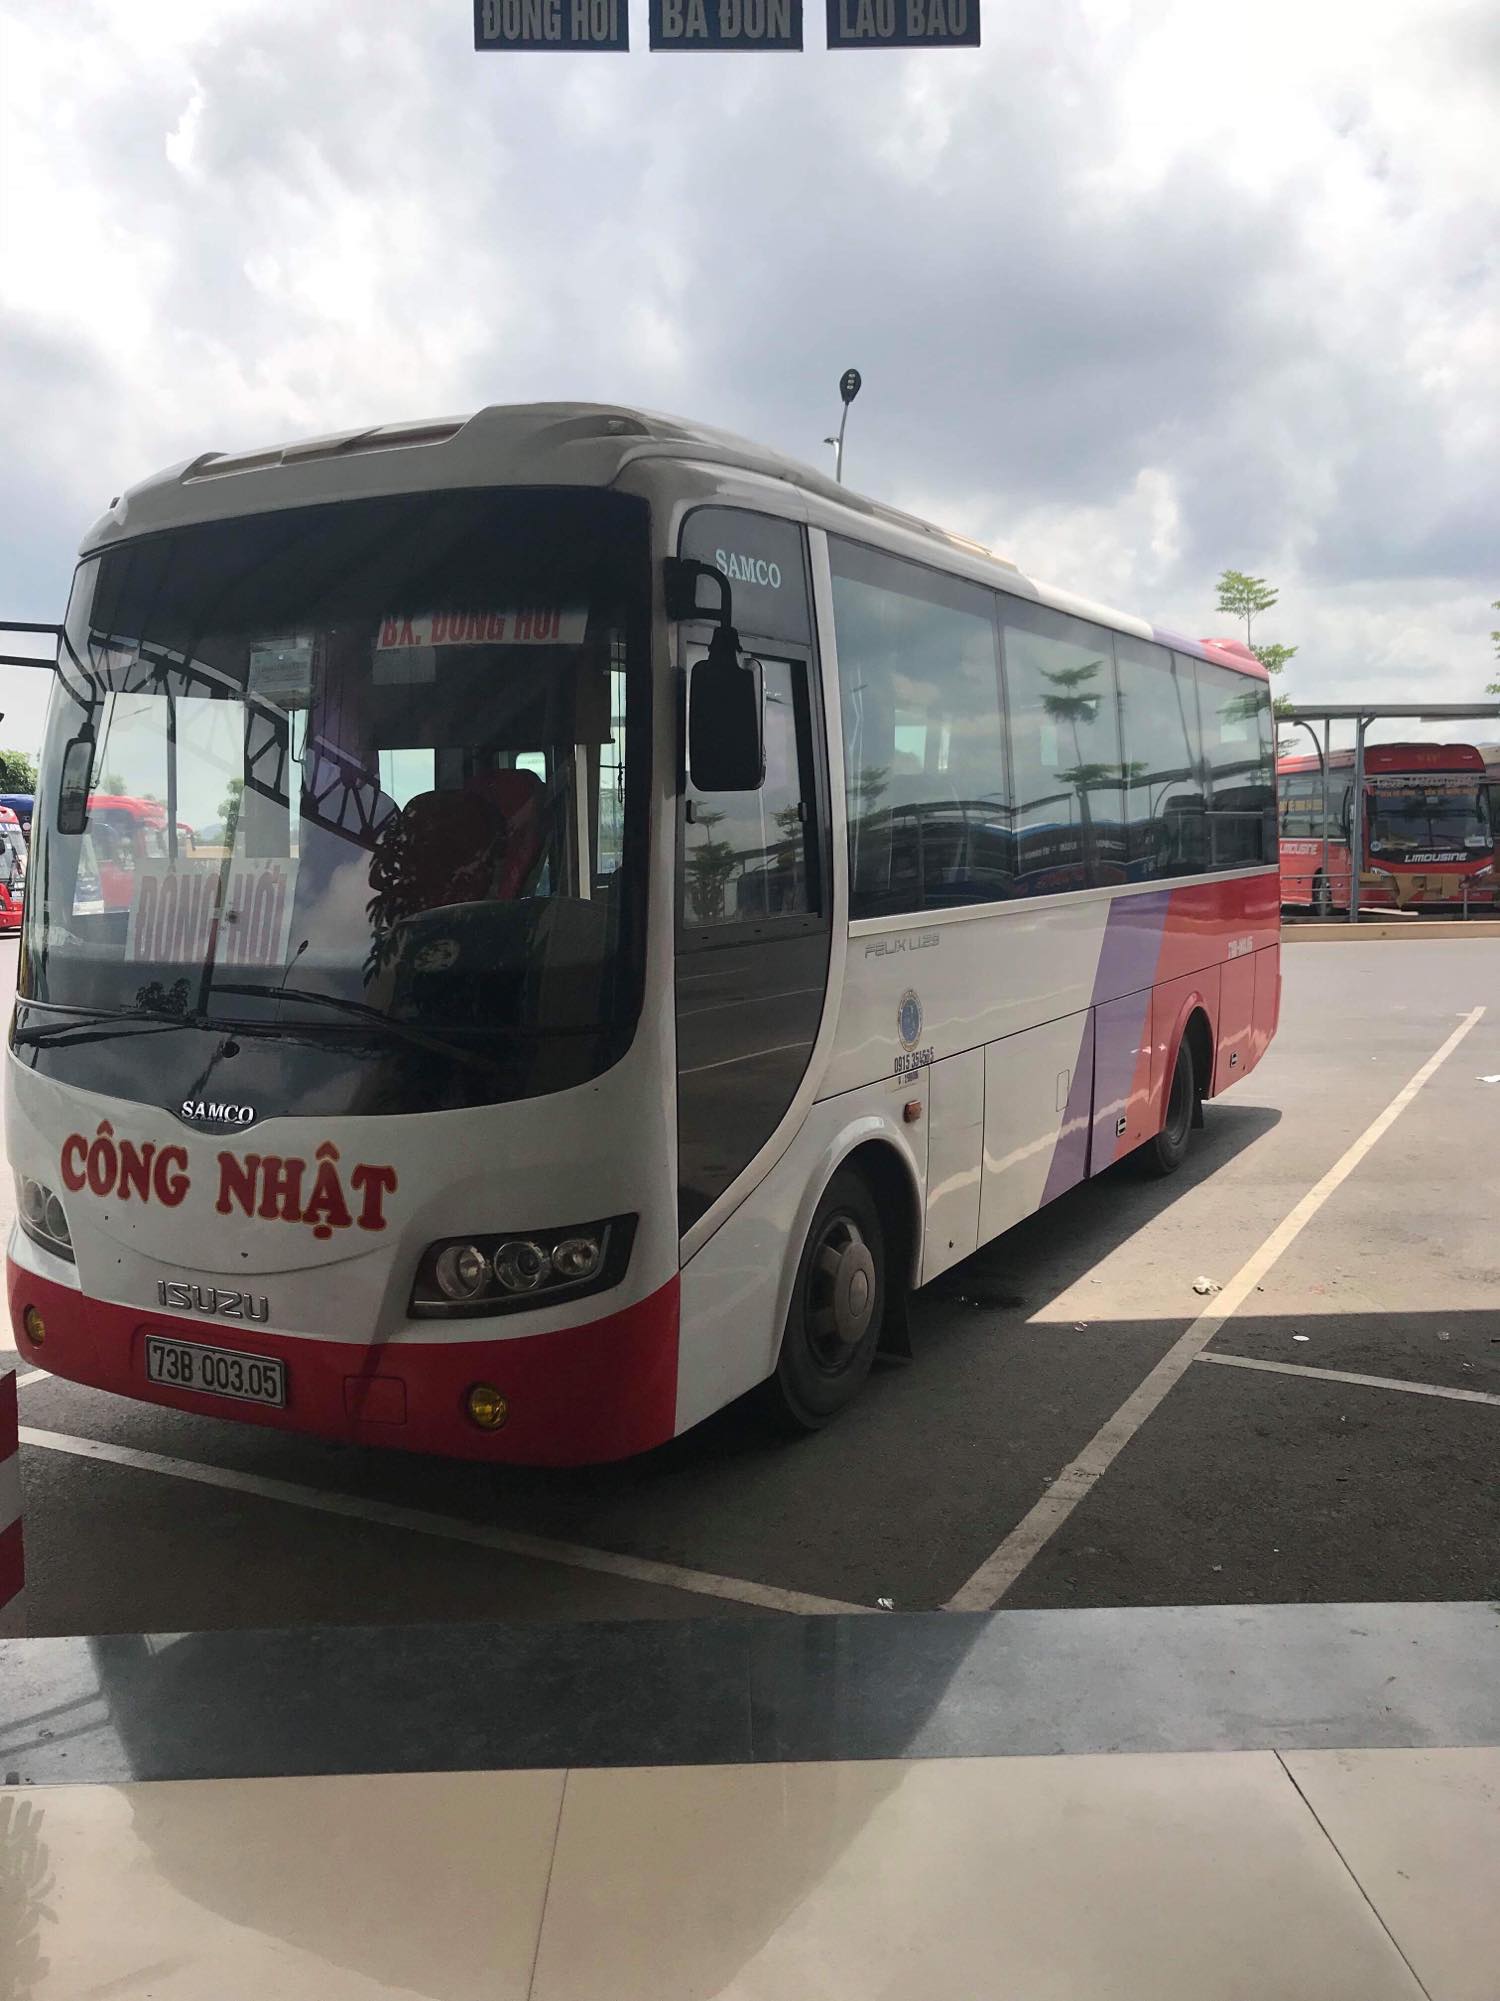 Nhà xe Công Nhật chuyên tuyến Đồng Hới, Quảng Bình ⇄ Vinh, Nghệ An